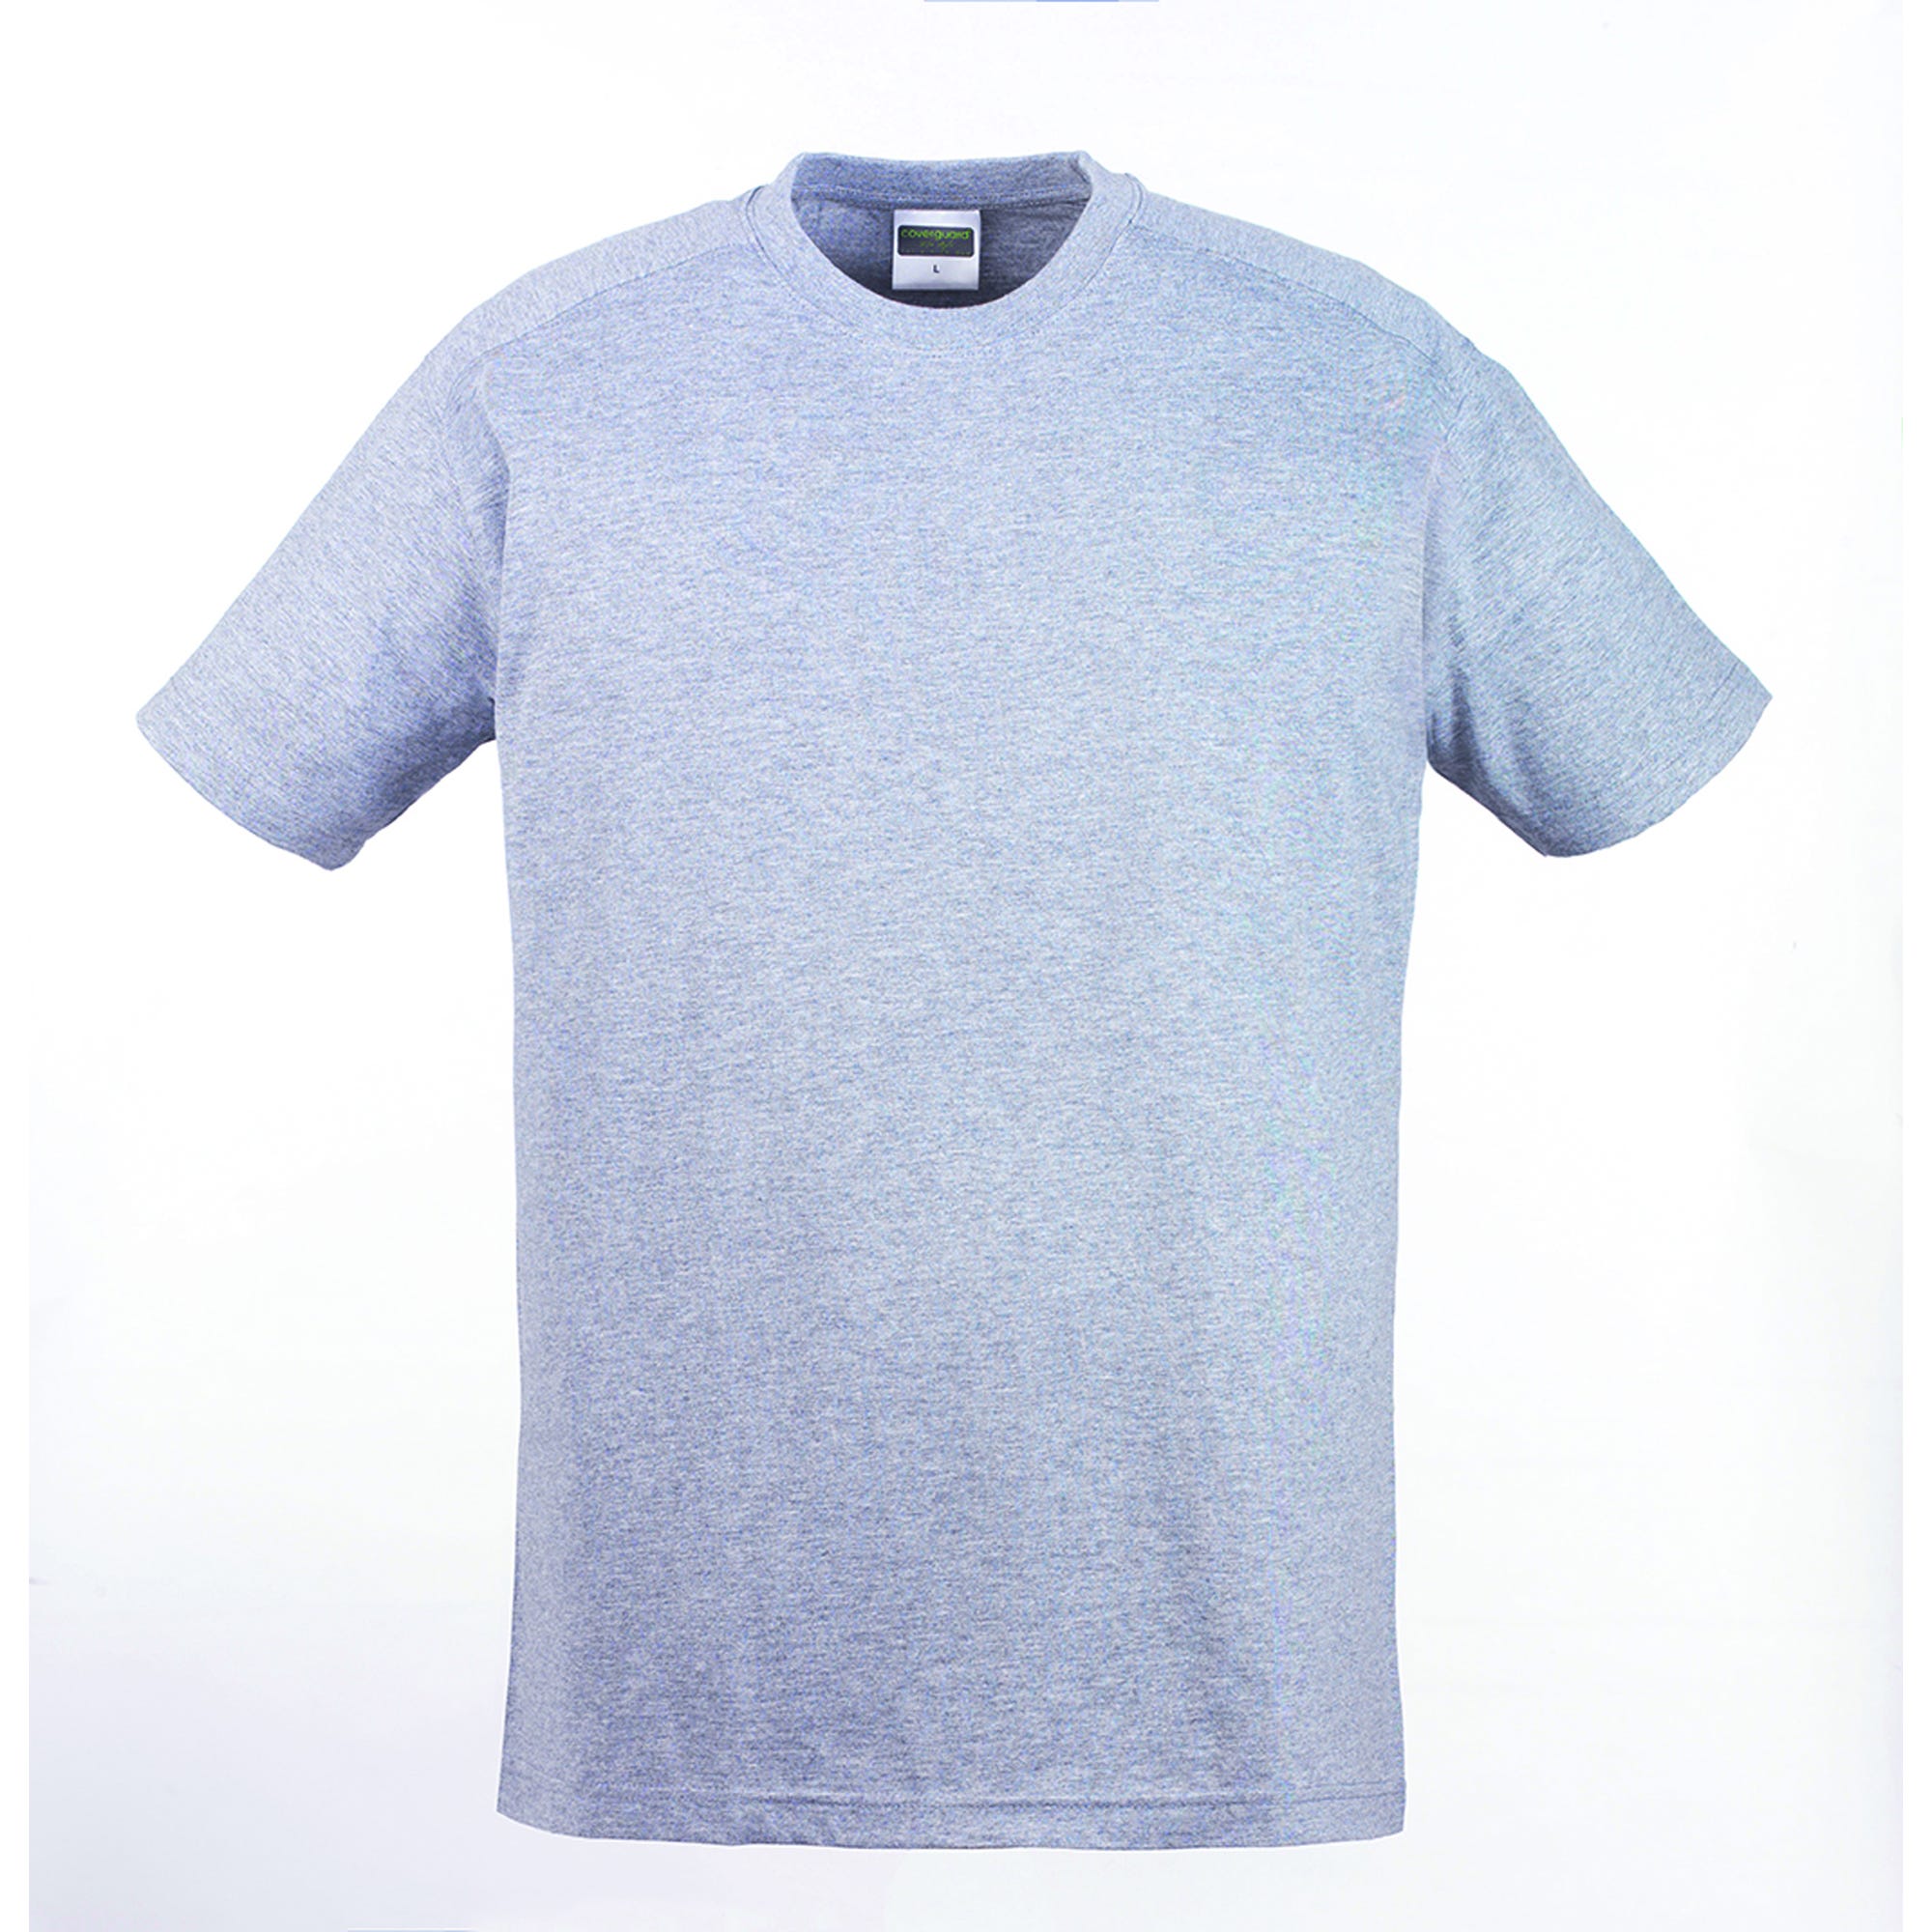 HIKE T-shirt MC gris chiné, 85% coton/15% viscose, 190g/m² - COVERGUARD - Taille S 1